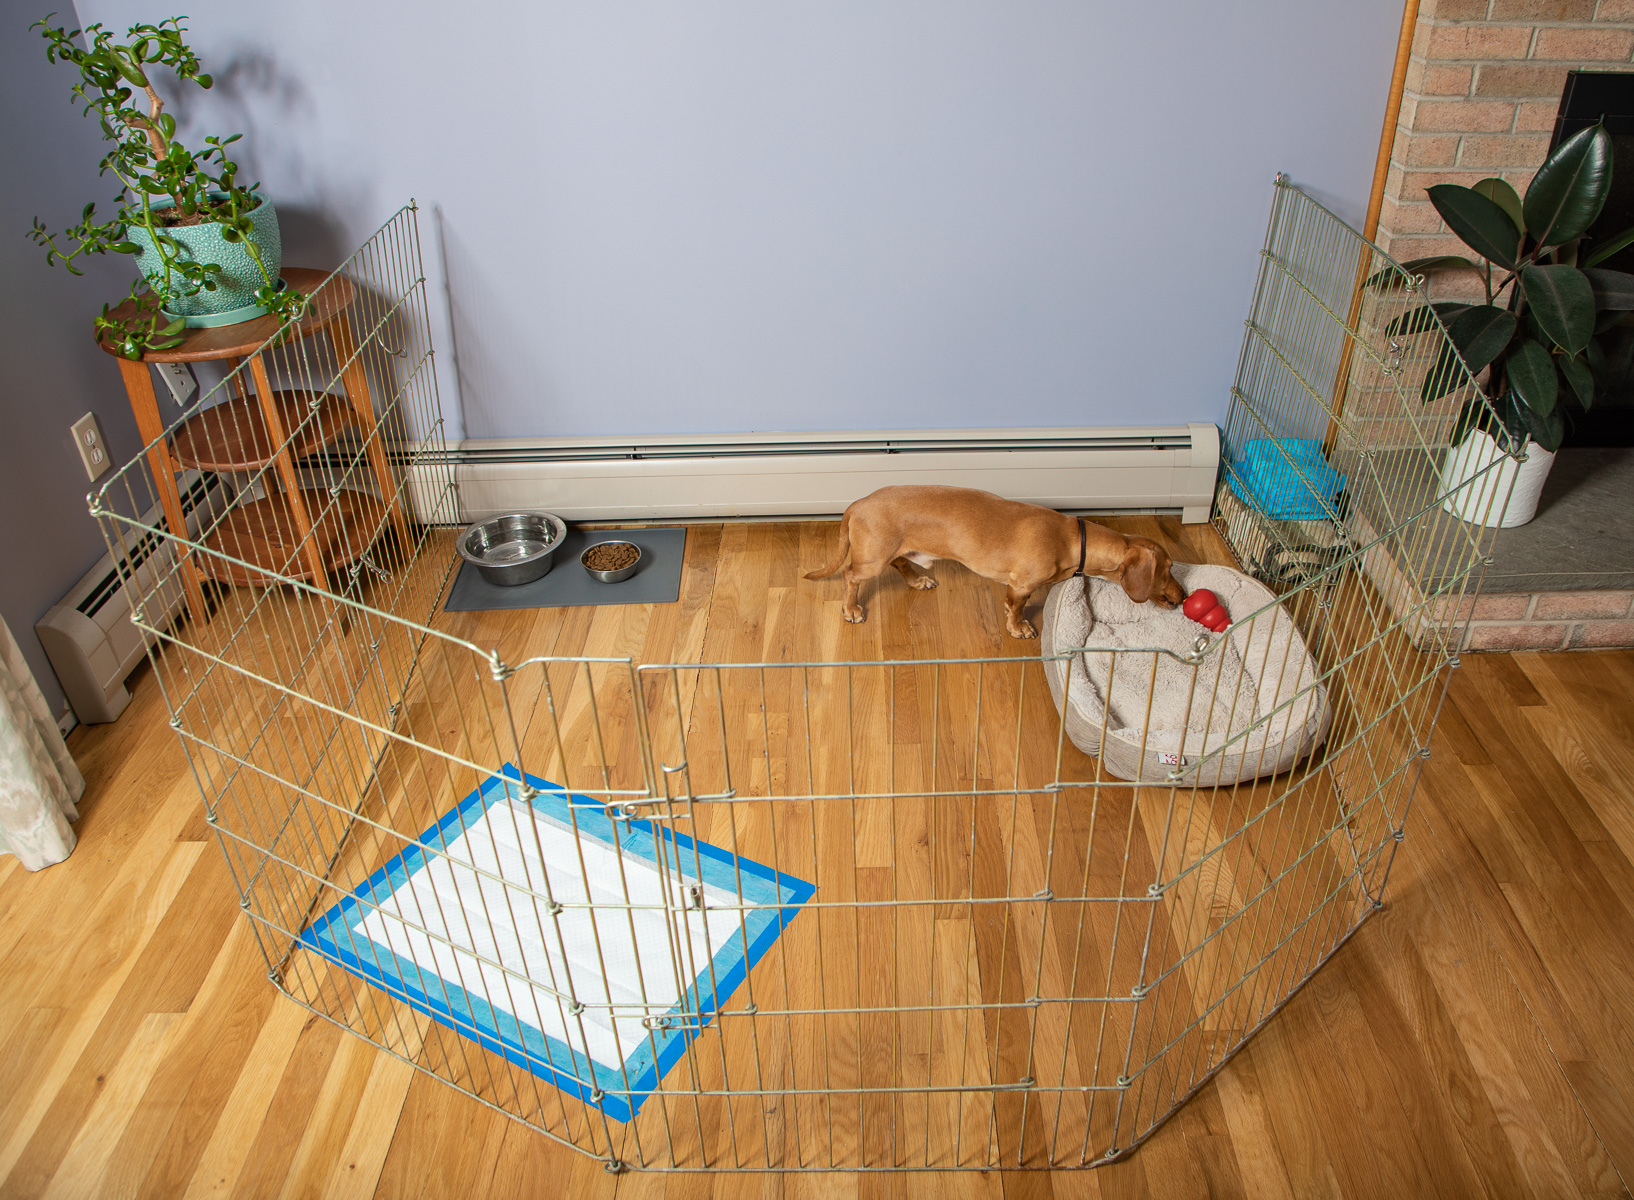 Dog in a pen - puppy housebreaking